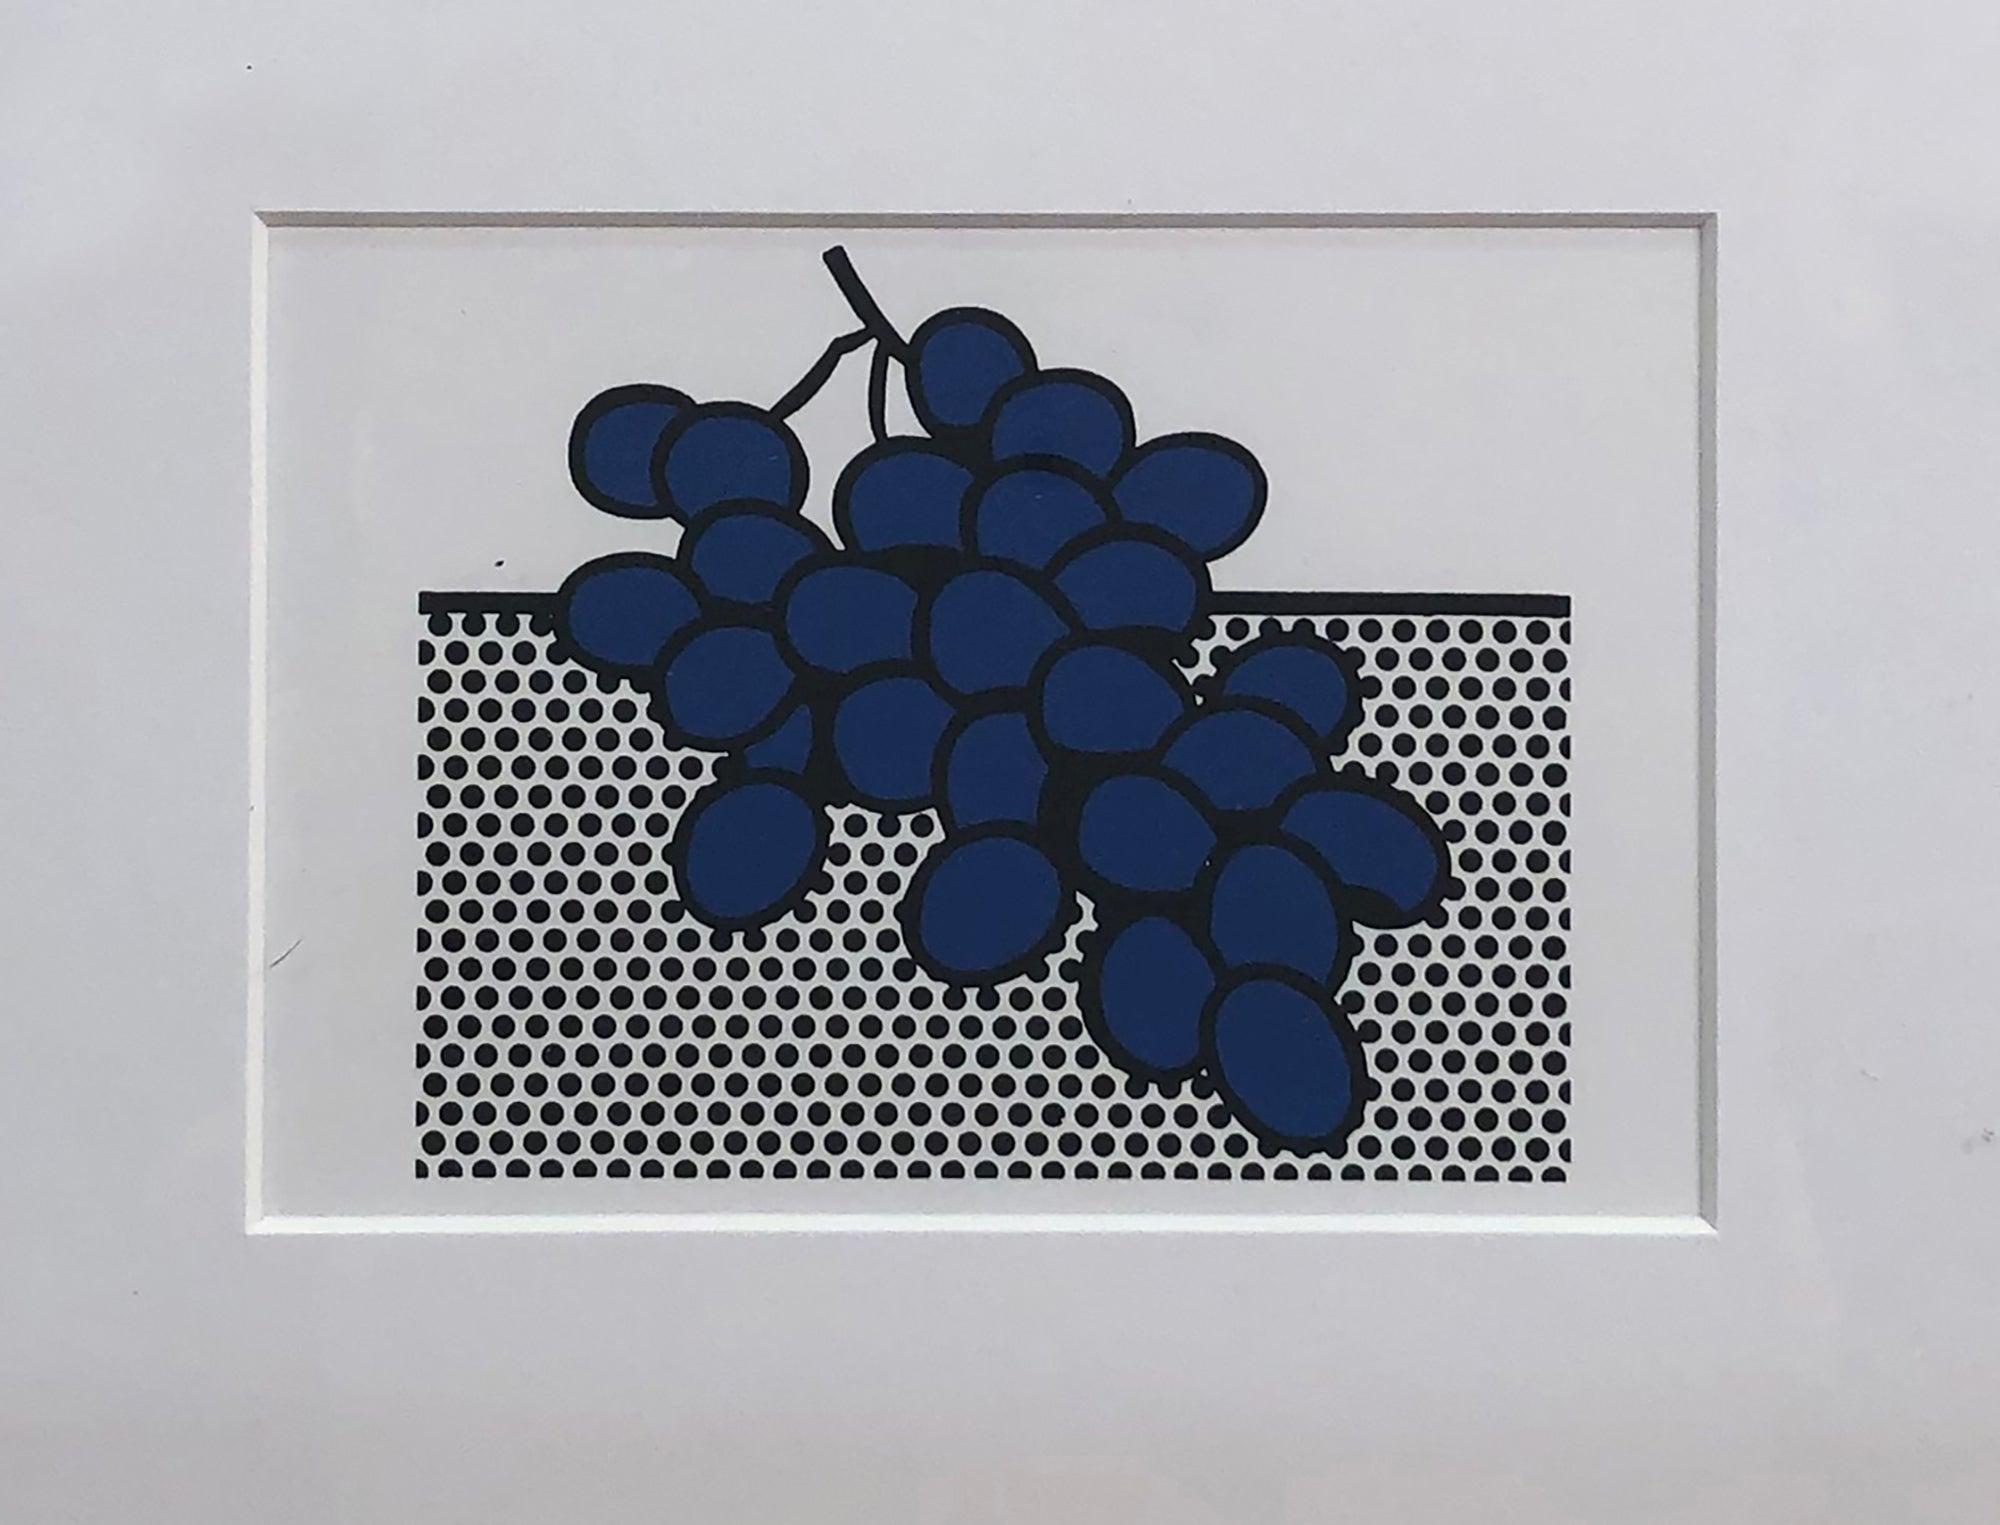 Invitation « Blue Grapes » de Roy Lichtenstein de 1972 FRAmed - Print de (after) Roy Lichtenstein